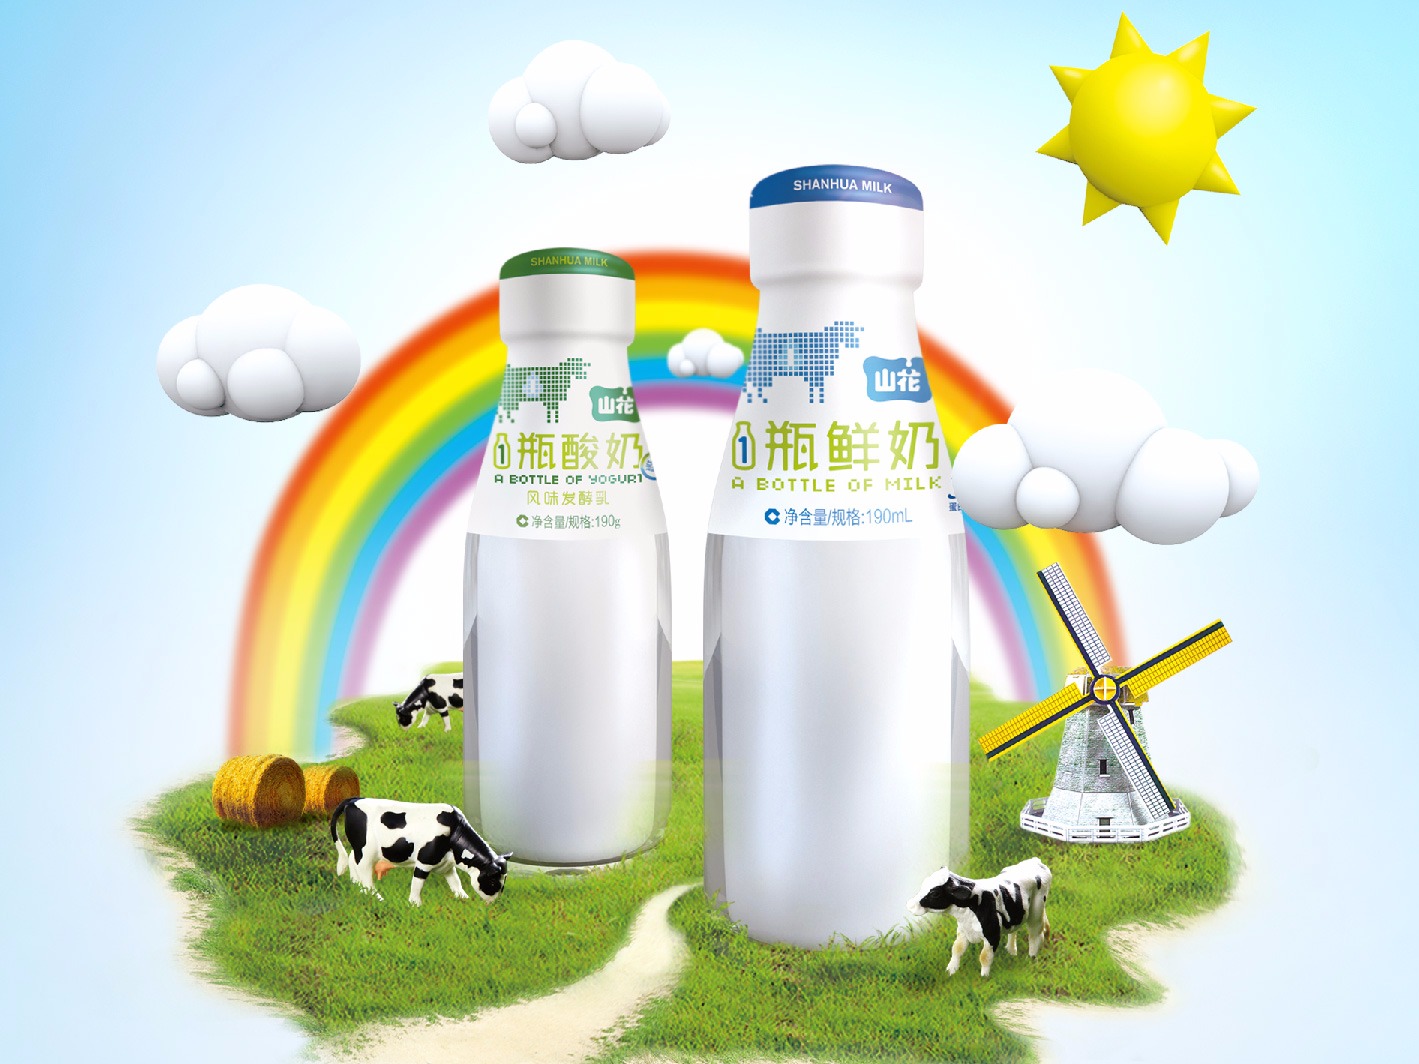 远山乳业公司花生奶植物蛋白饮料包装设计图片-西风东韵设计